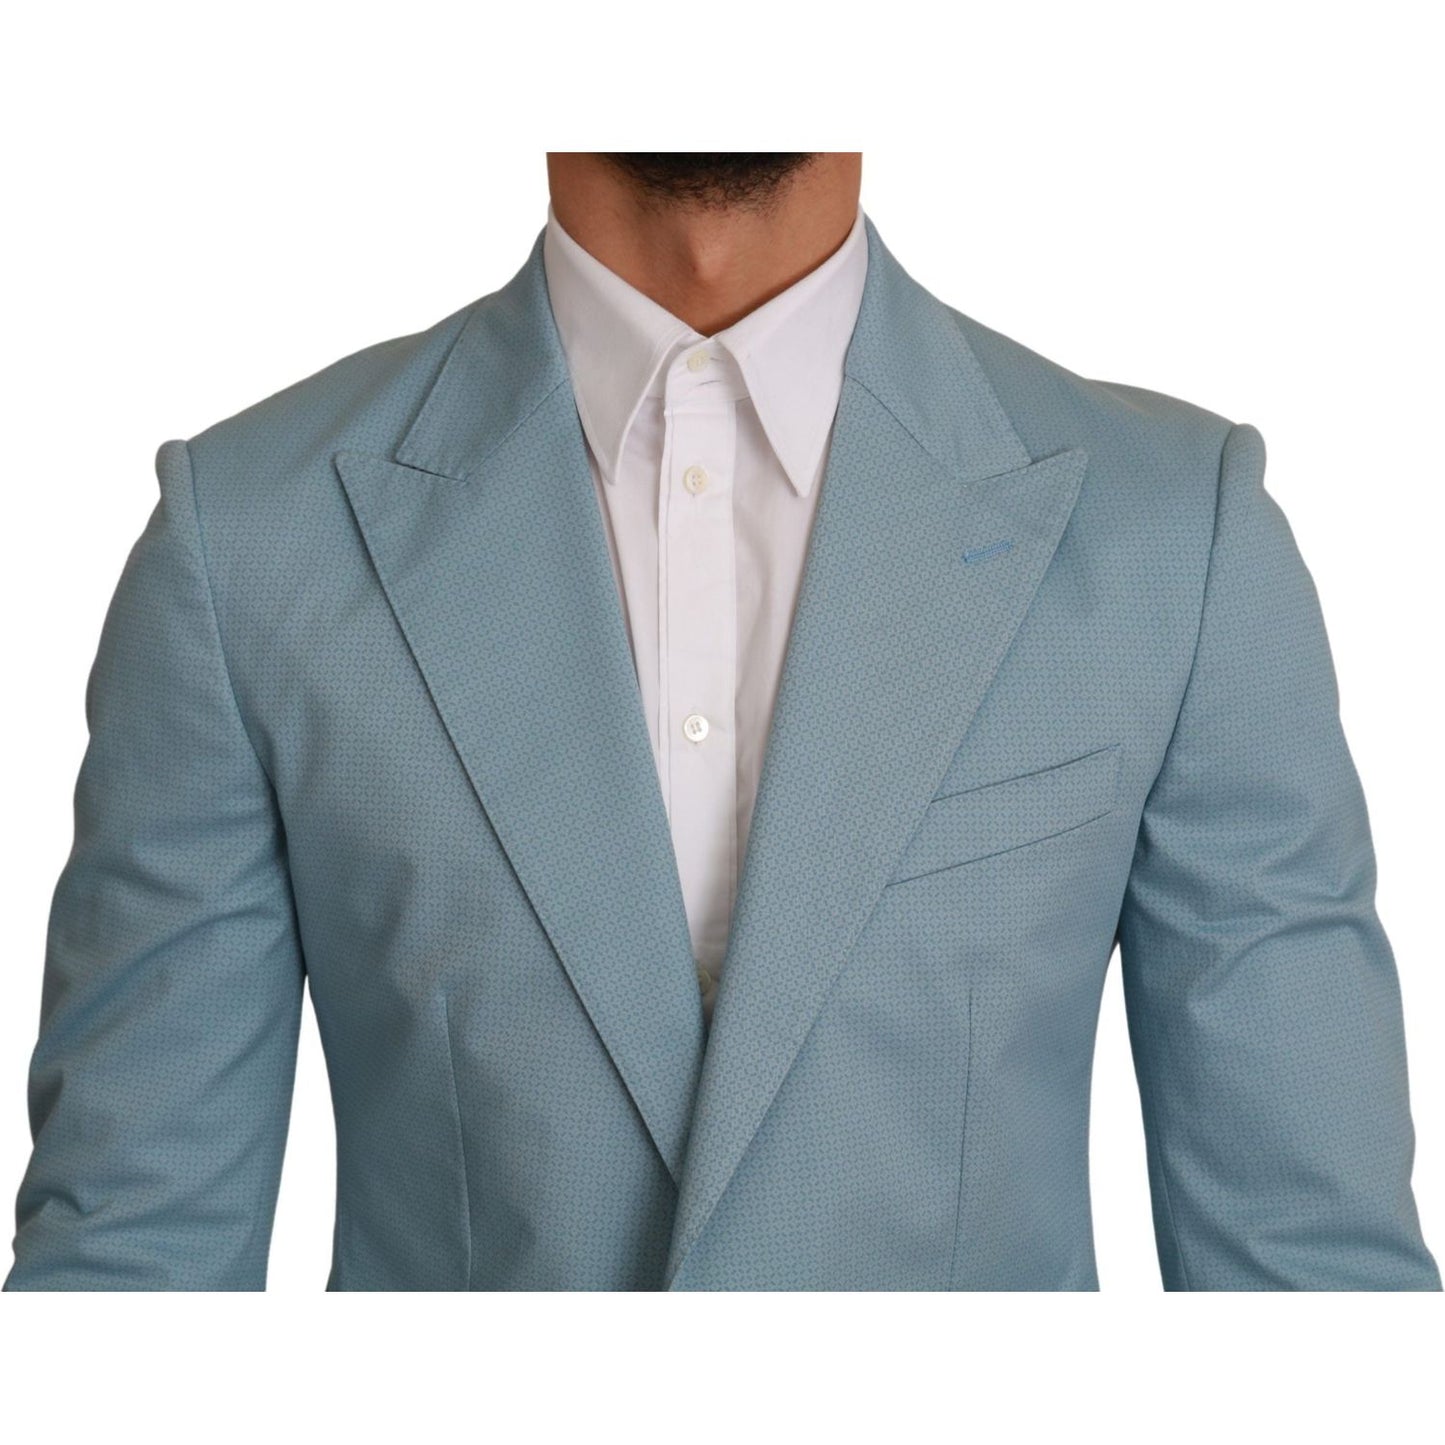 Dolce & Gabbana Elegant Blue Fantasy Pattern Blazer blue-slim-fit-coat-jacket-martini-blazer IMG_1190-scaled-81cb0d77-b24.jpg